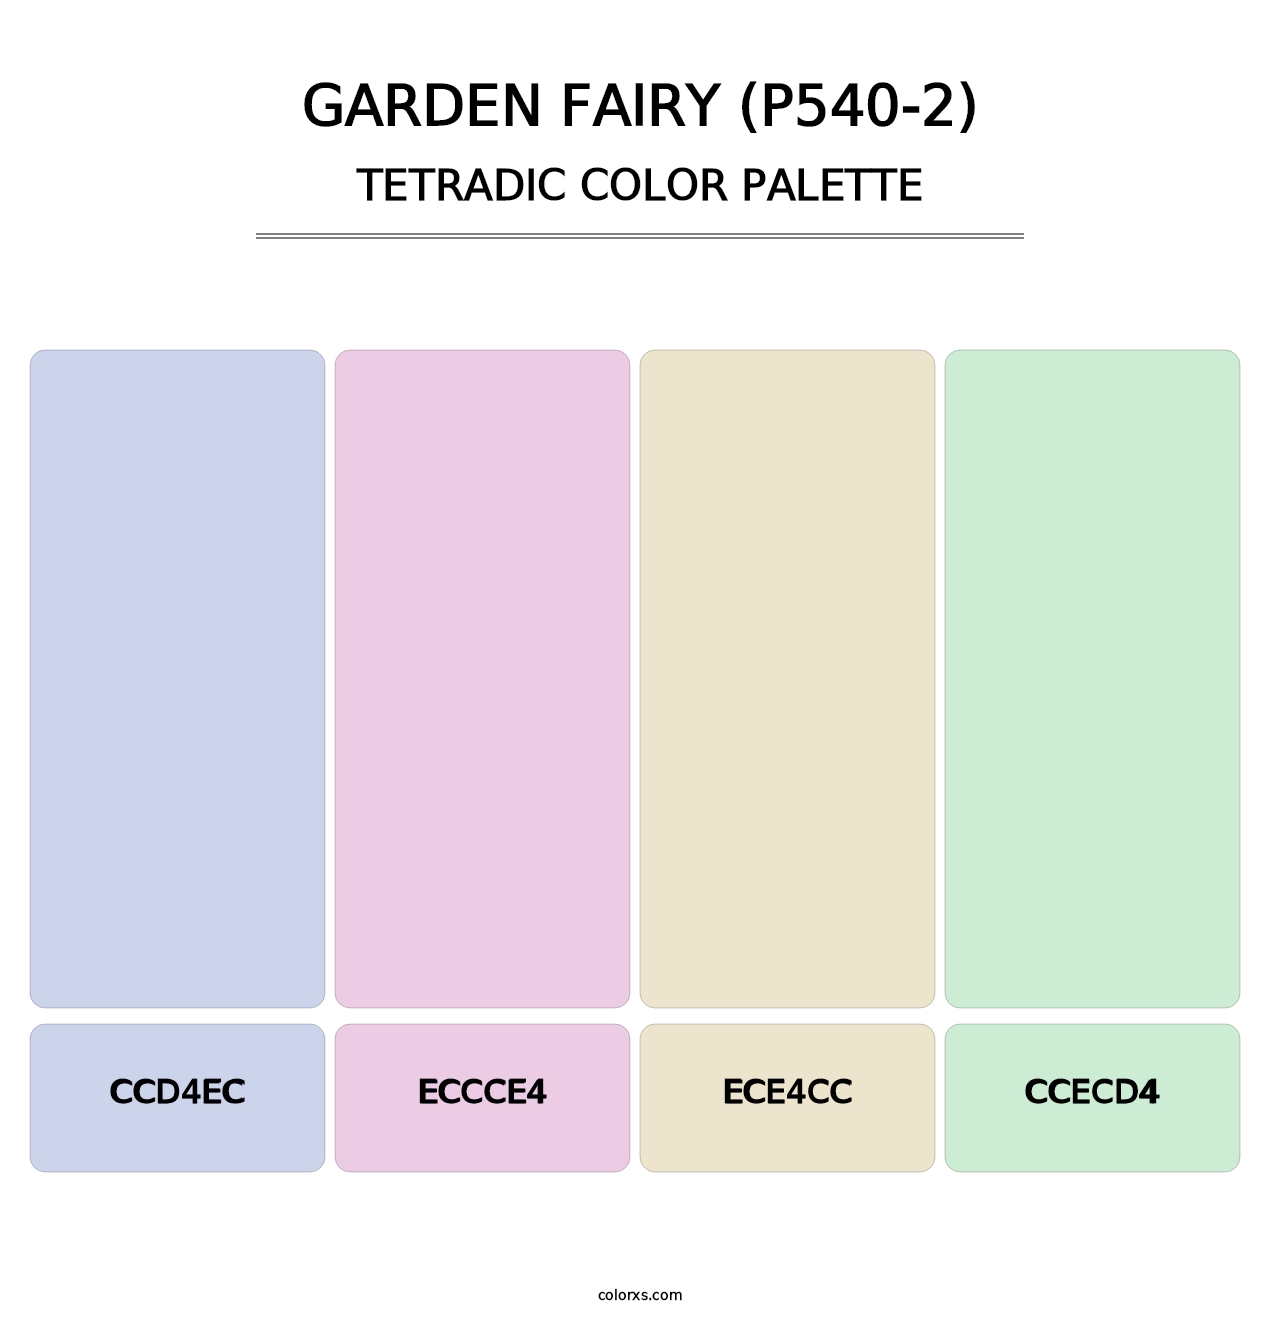 Garden Fairy (P540-2) - Tetradic Color Palette